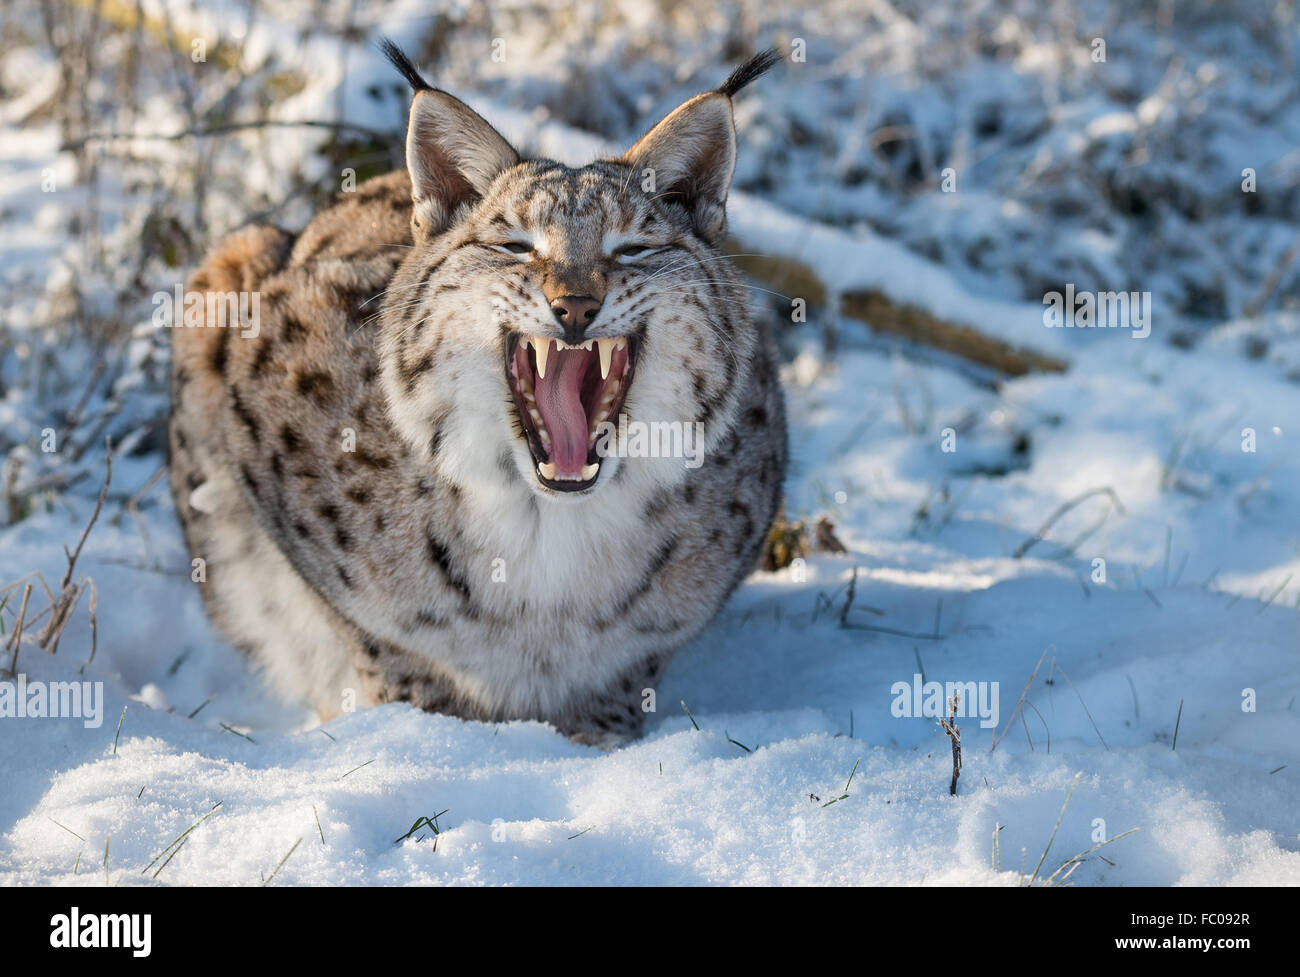 Schoenebeck brut, de l'Allemagne. 19 Jan, 2016. Un lynx dans la neige à l'Wildpark Schorfheide réserve brut en jeu Schoenebeck, Allemagne, 19 janvier 2016. PHOTO : PATRICK PLEUL/DPA dpa : Crédit photo alliance/Alamy Live News Banque D'Images